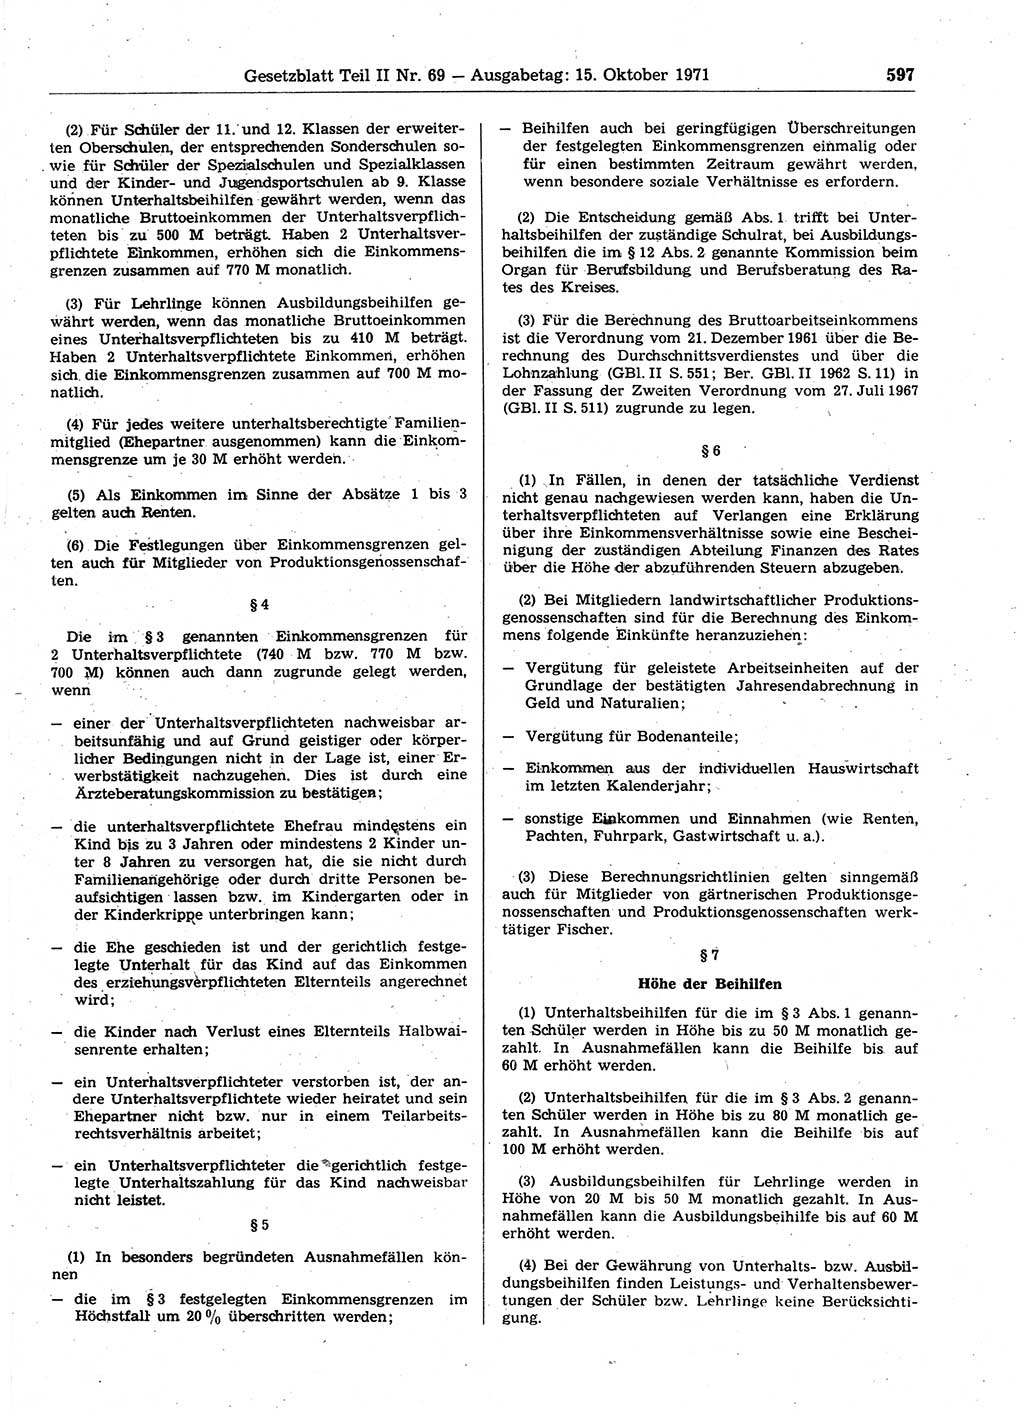 Gesetzblatt (GBl.) der Deutschen Demokratischen Republik (DDR) Teil ⅠⅠ 1971, Seite 597 (GBl. DDR ⅠⅠ 1971, S. 597)